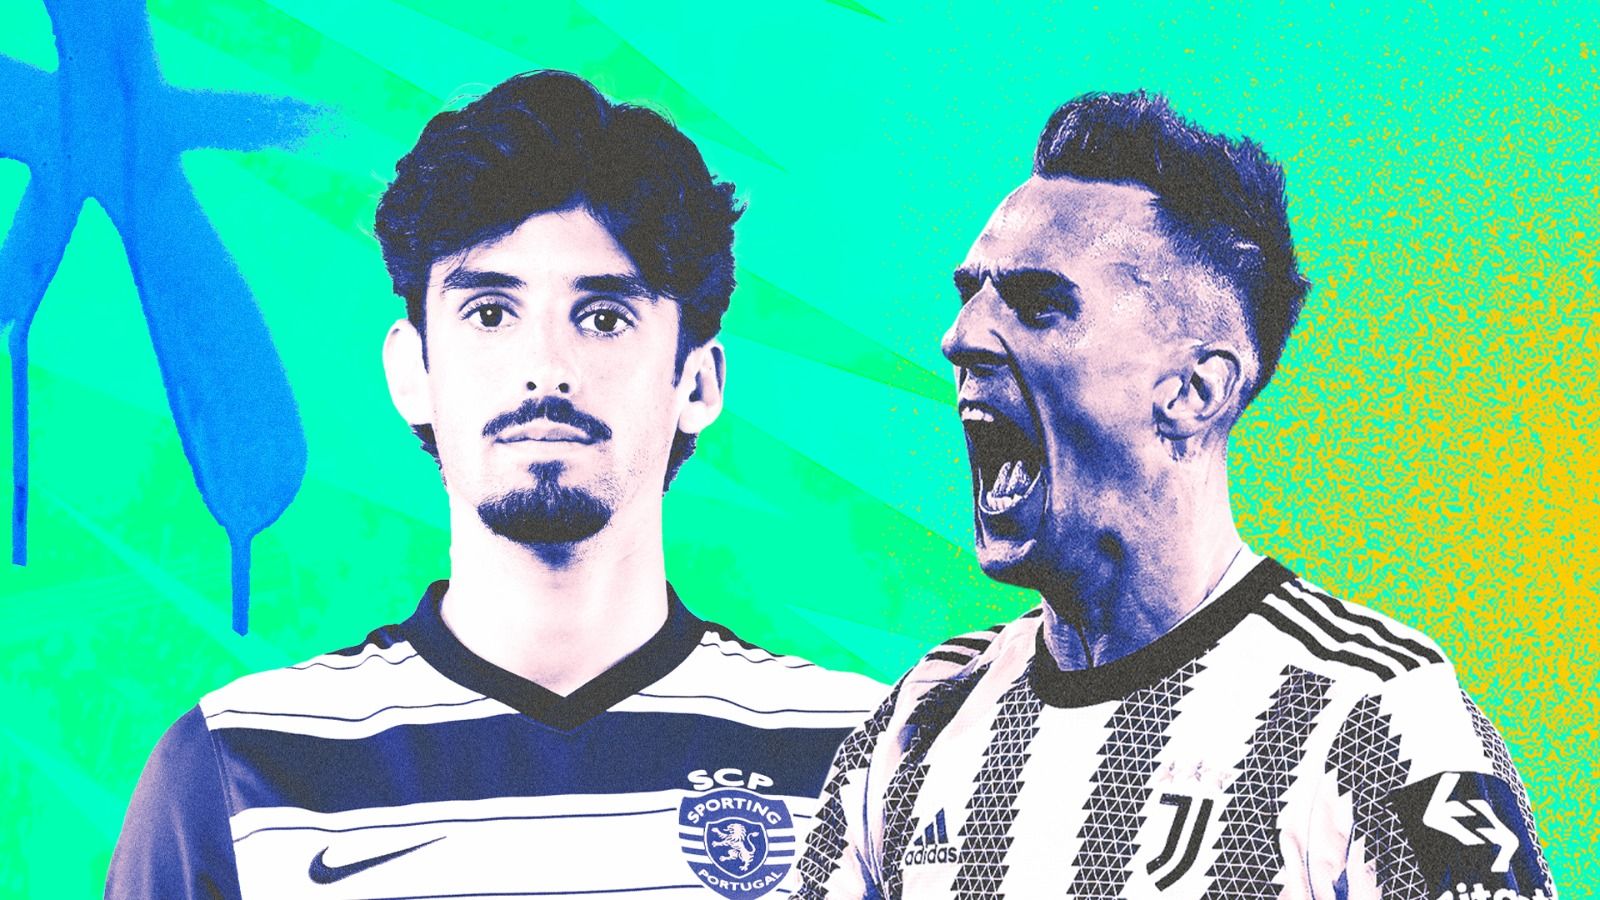 Bintang Sporting CP, Francisco Triancao dan penyerang Juventus, Arkadiusz Milik (Deni Sulaeman/Skor.id).